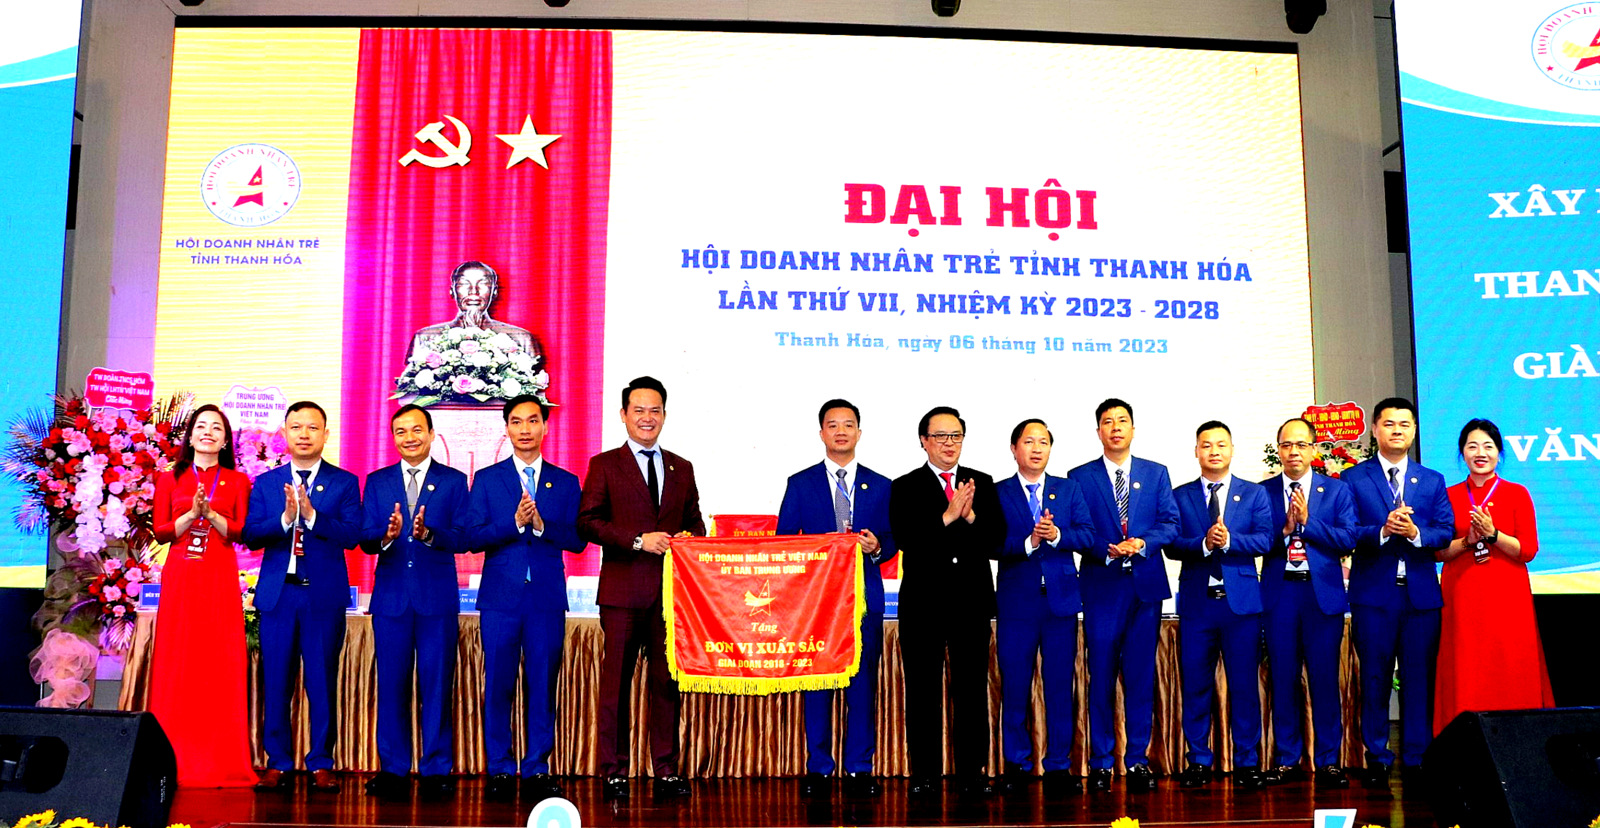 Ủy ban Trung ương Hội Doanh nhân trẻ Việt Nam đã tặng Cờ thi đua đơn vị xuất sắc, giai đoạn 2018 - 2023 cho Hội Doanh nhân trẻ Thanh Hóa.